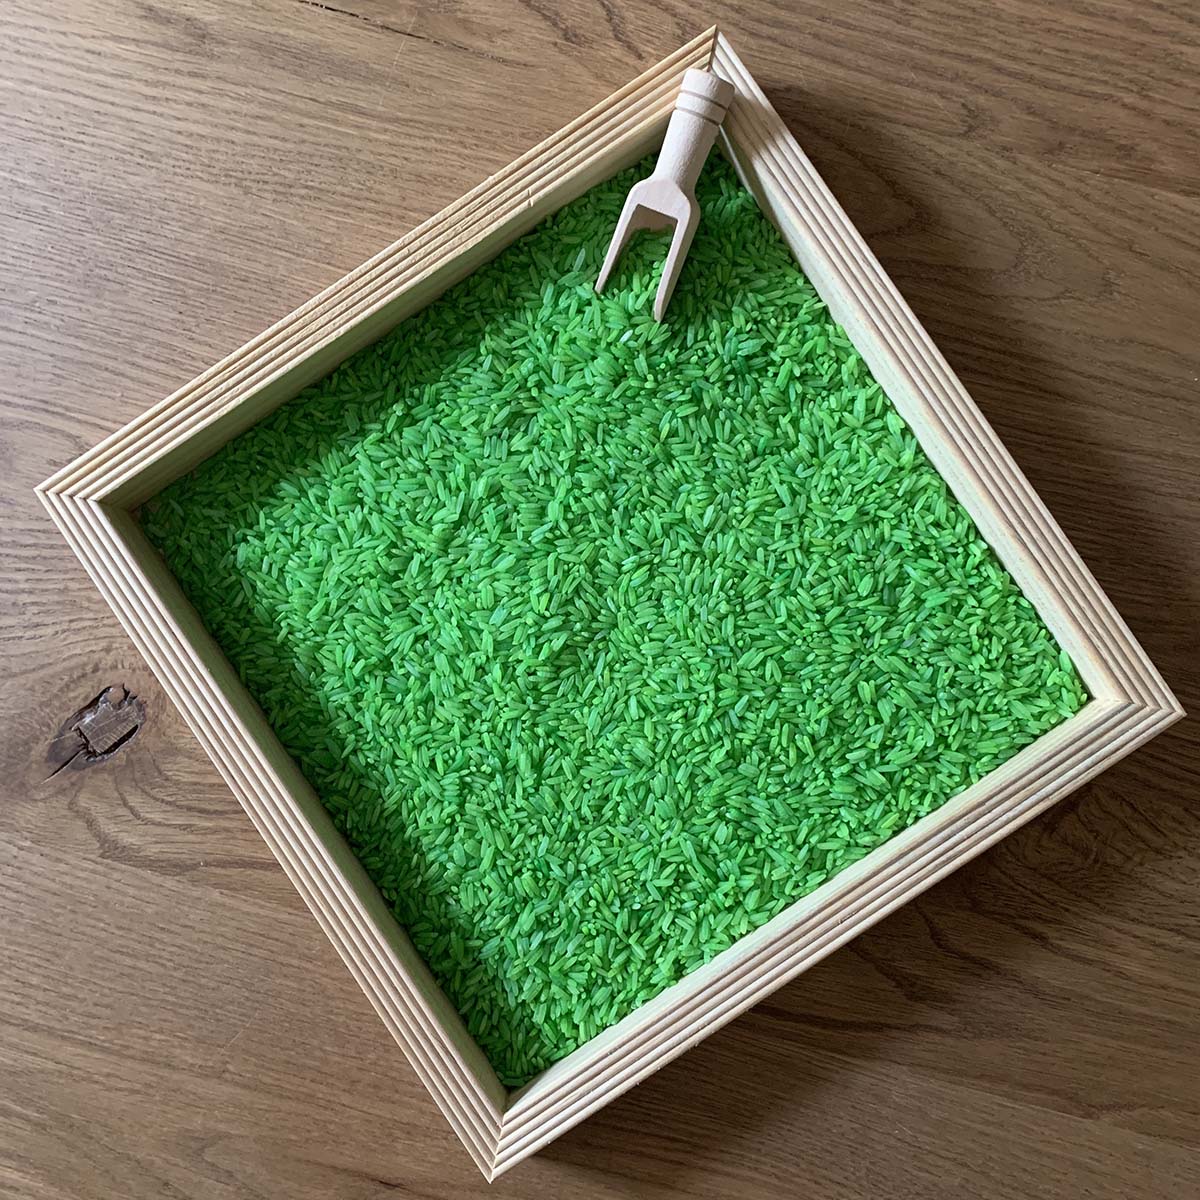 Groen is gras. Toch? Of maak je eigen mix met meerdere kleuren rijst.